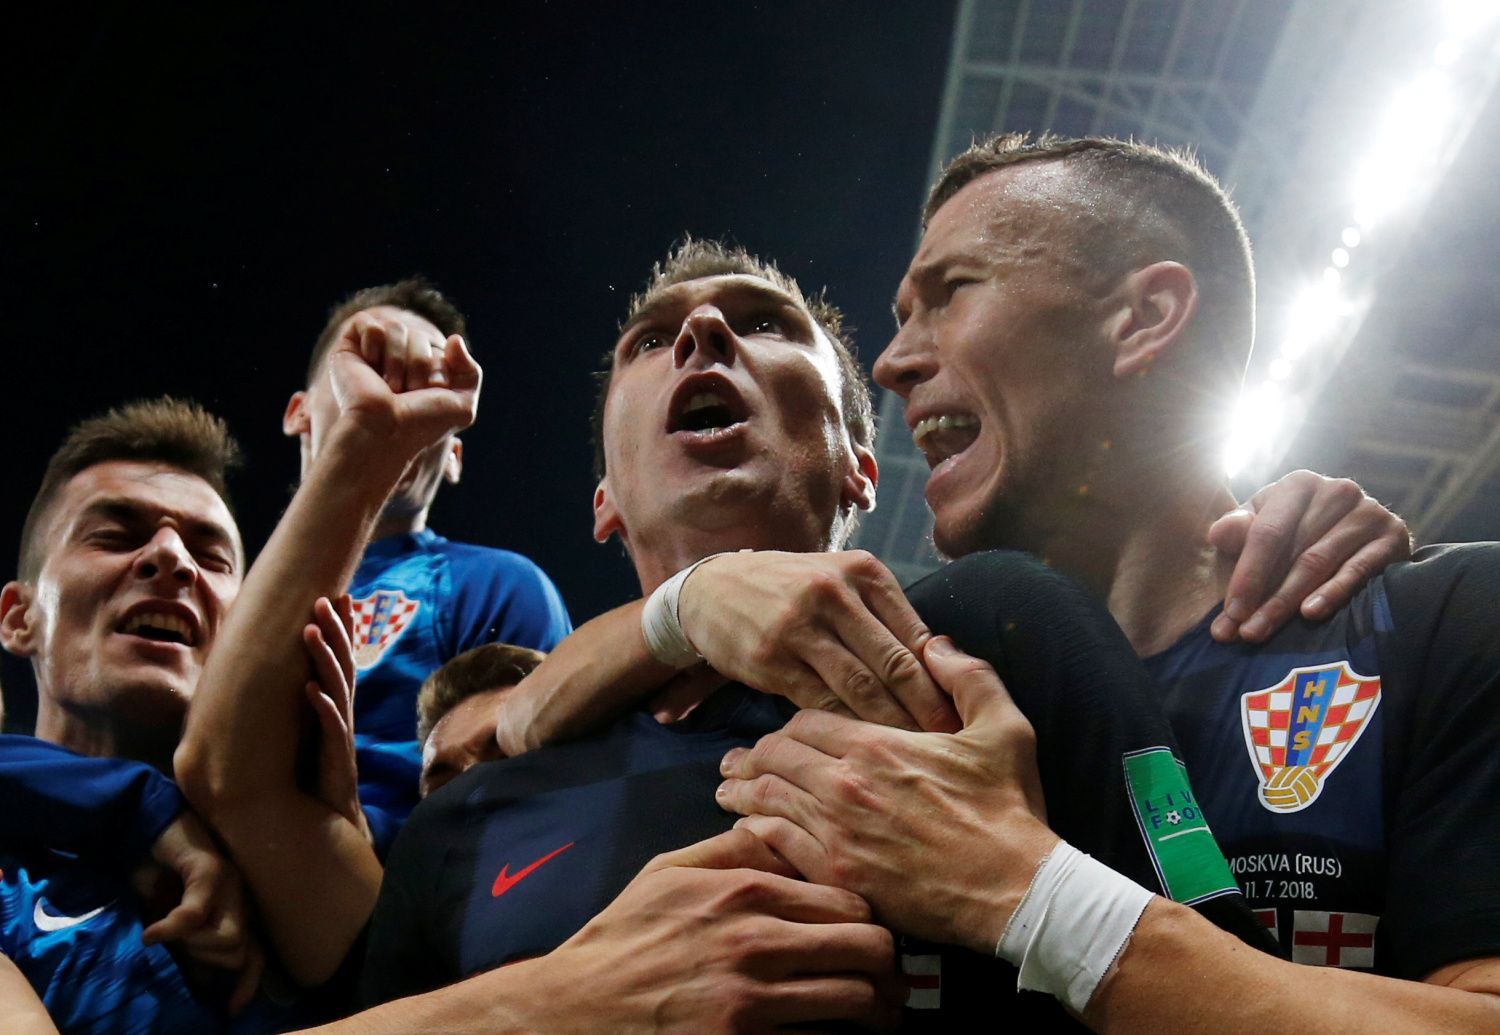 Mario Mandžukič slaví gól v semifinále MS 2018 Chorvatsko - Anglie